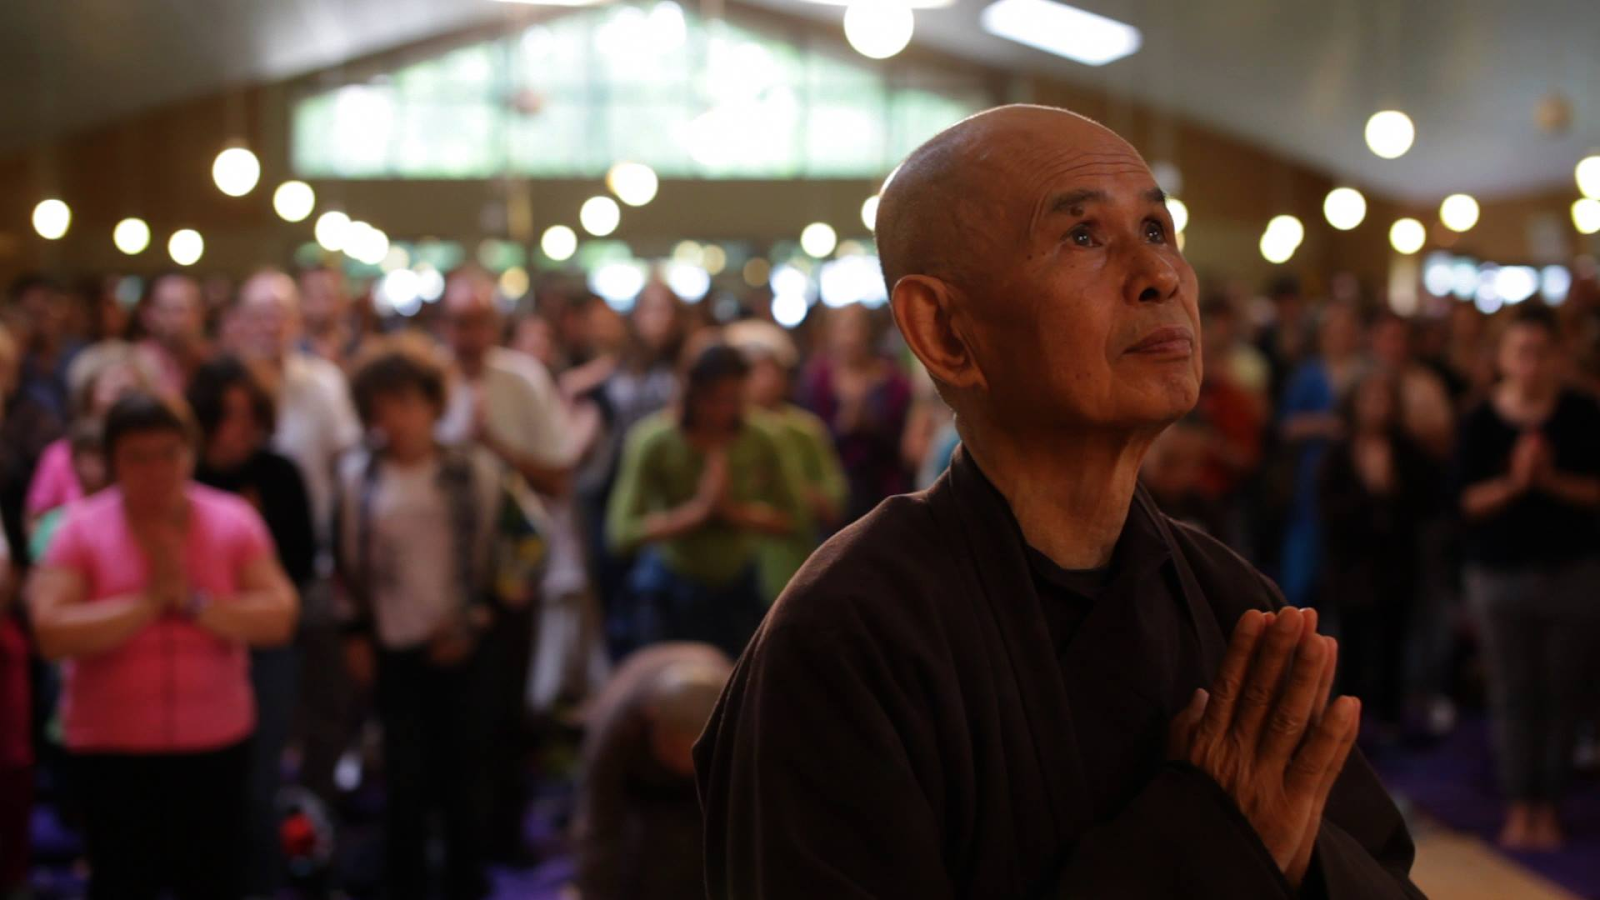 Mỹ: Công chiếu bộ phim 'hãy bước đi cùng tôi' về Thiền sư Thích Nhất Hạnh 